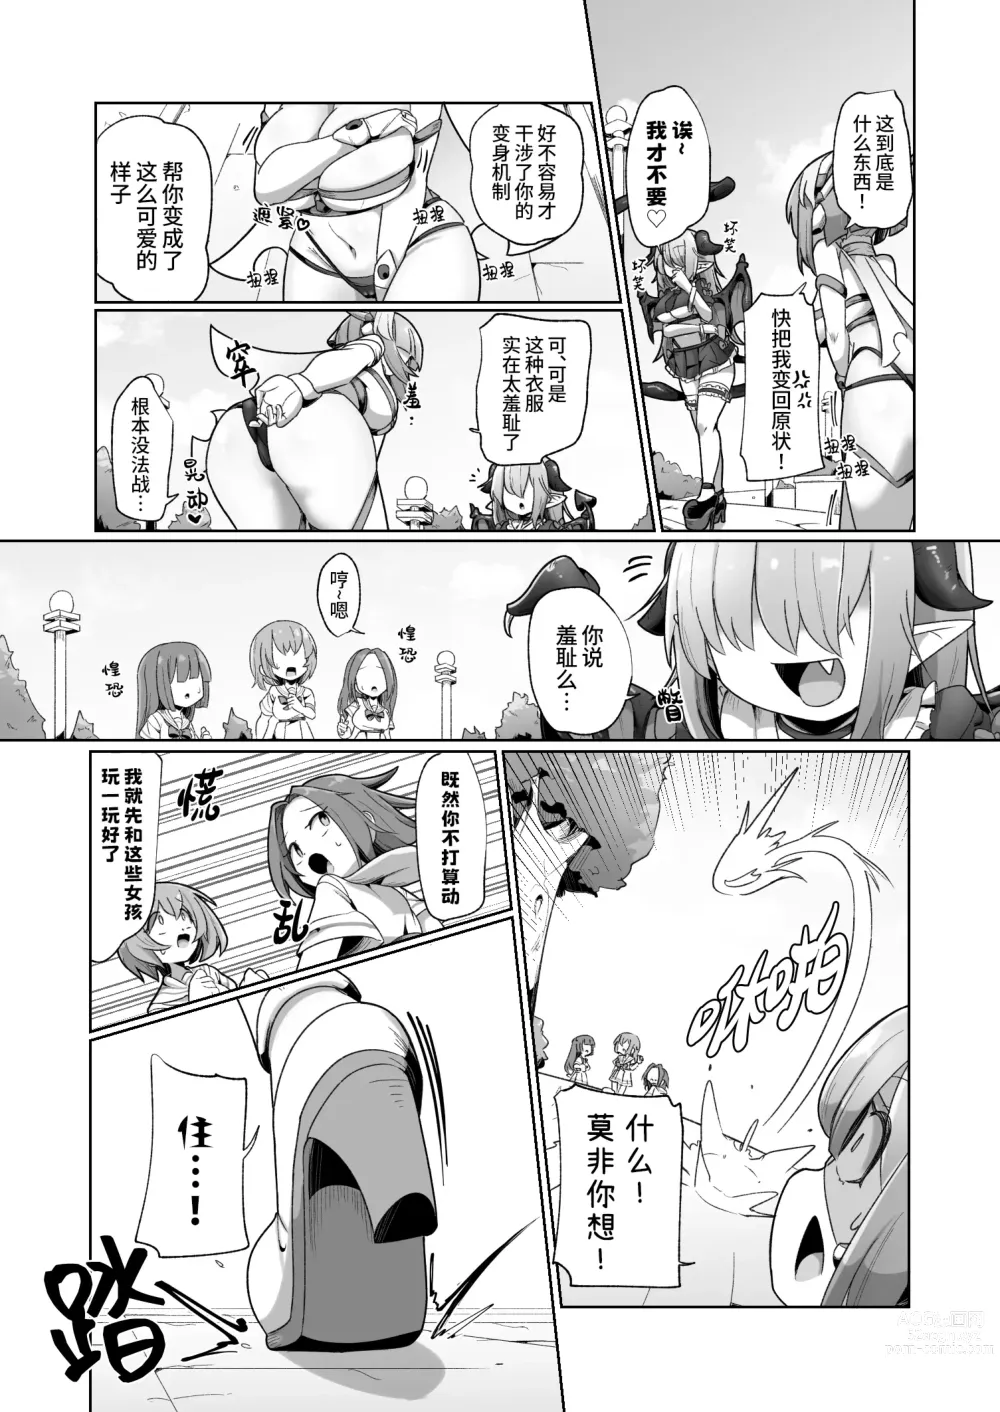 Page 8 of doujinshi 被本该守护的同伴侵犯的这种感觉怎么样啊(笑)??